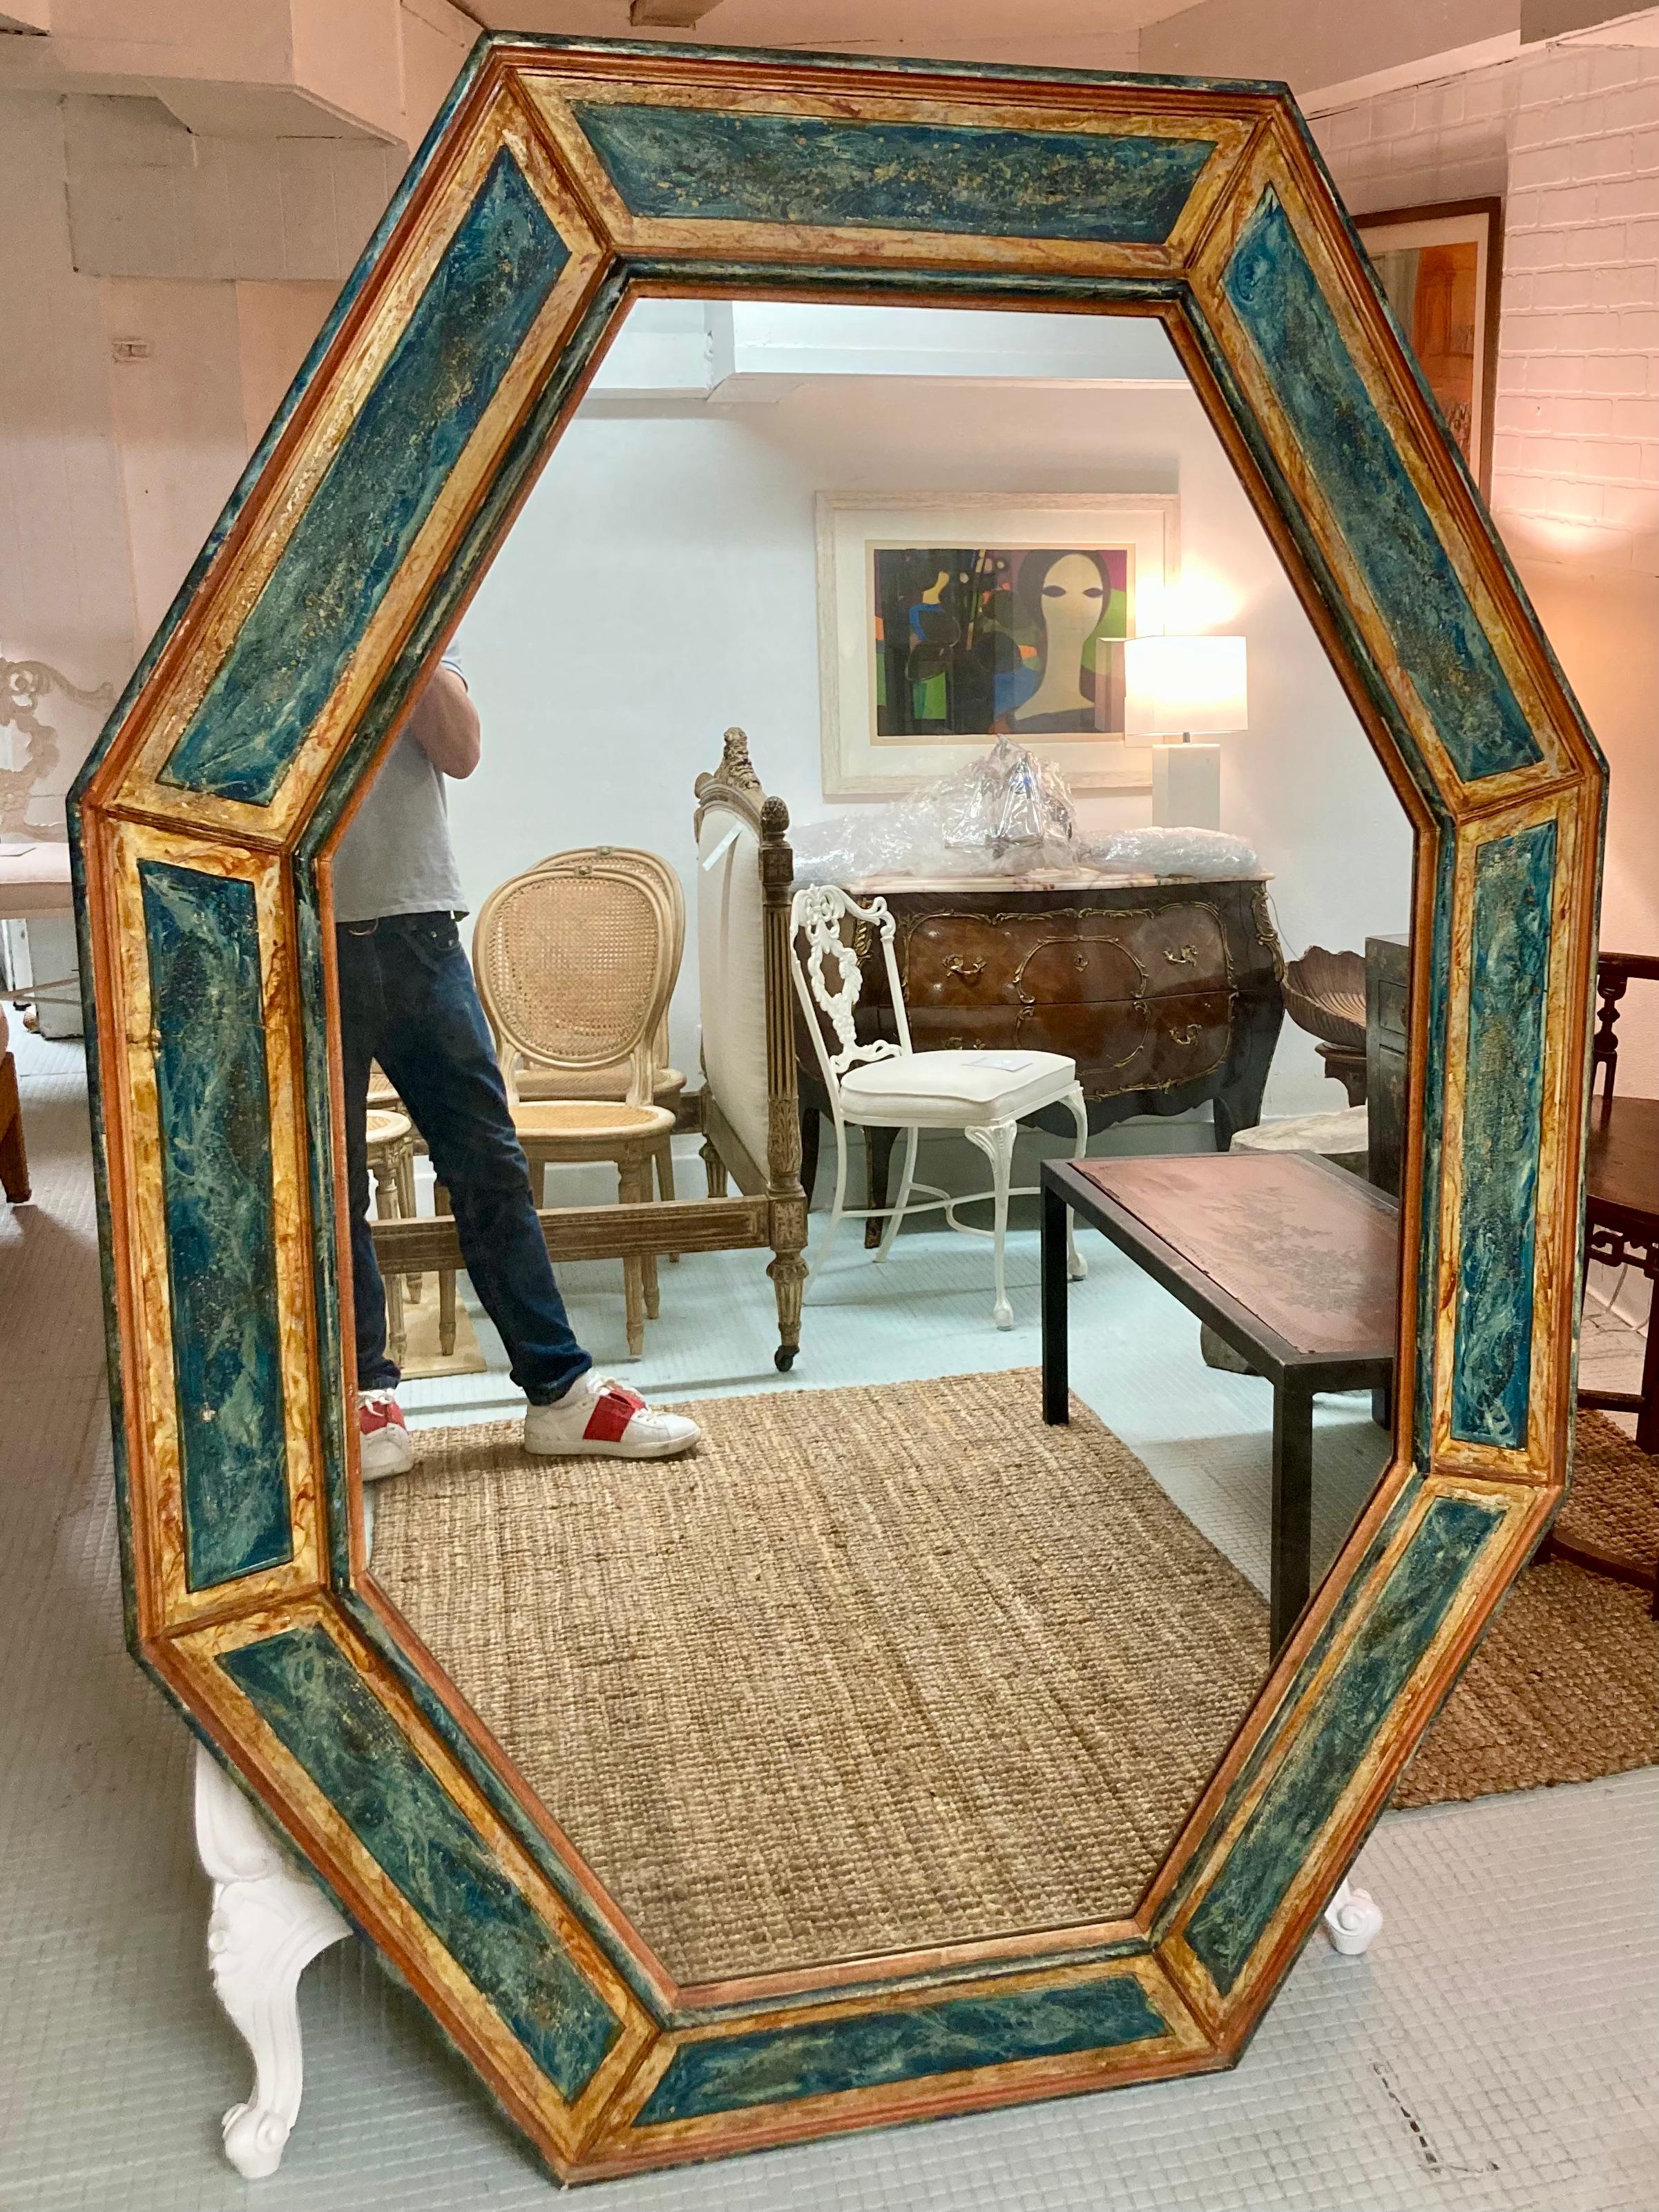 Magnifique miroir italien du 19ème siècle peint en faux marbre. Les merveilleux détails peints et le cadre en bois sculpté biseauté de forme octogonale allongée ajoutent une touche dramatique à n'importe quelle pièce. Fait amusant : ce miroir